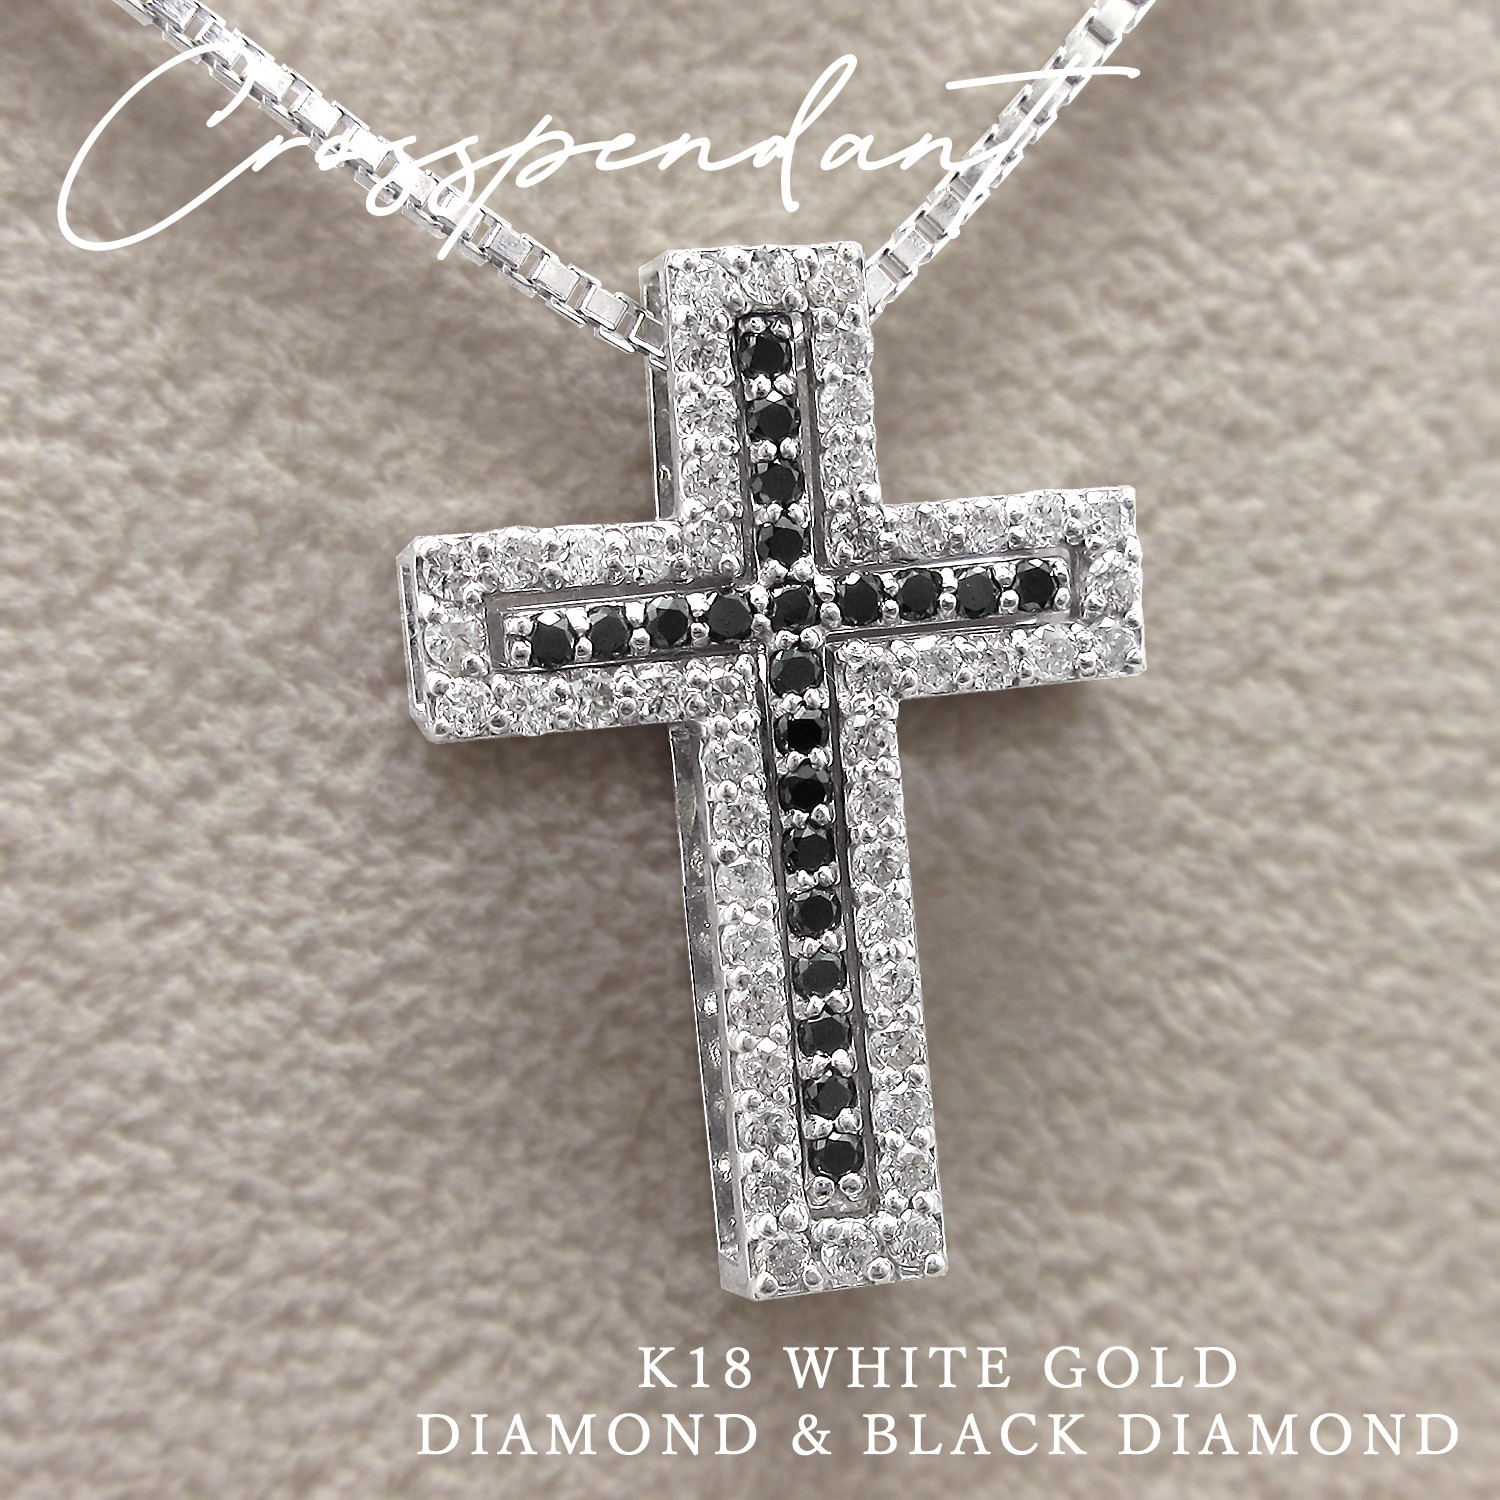 K18WG　クロスネックレス　ダイヤモンド1.00ct